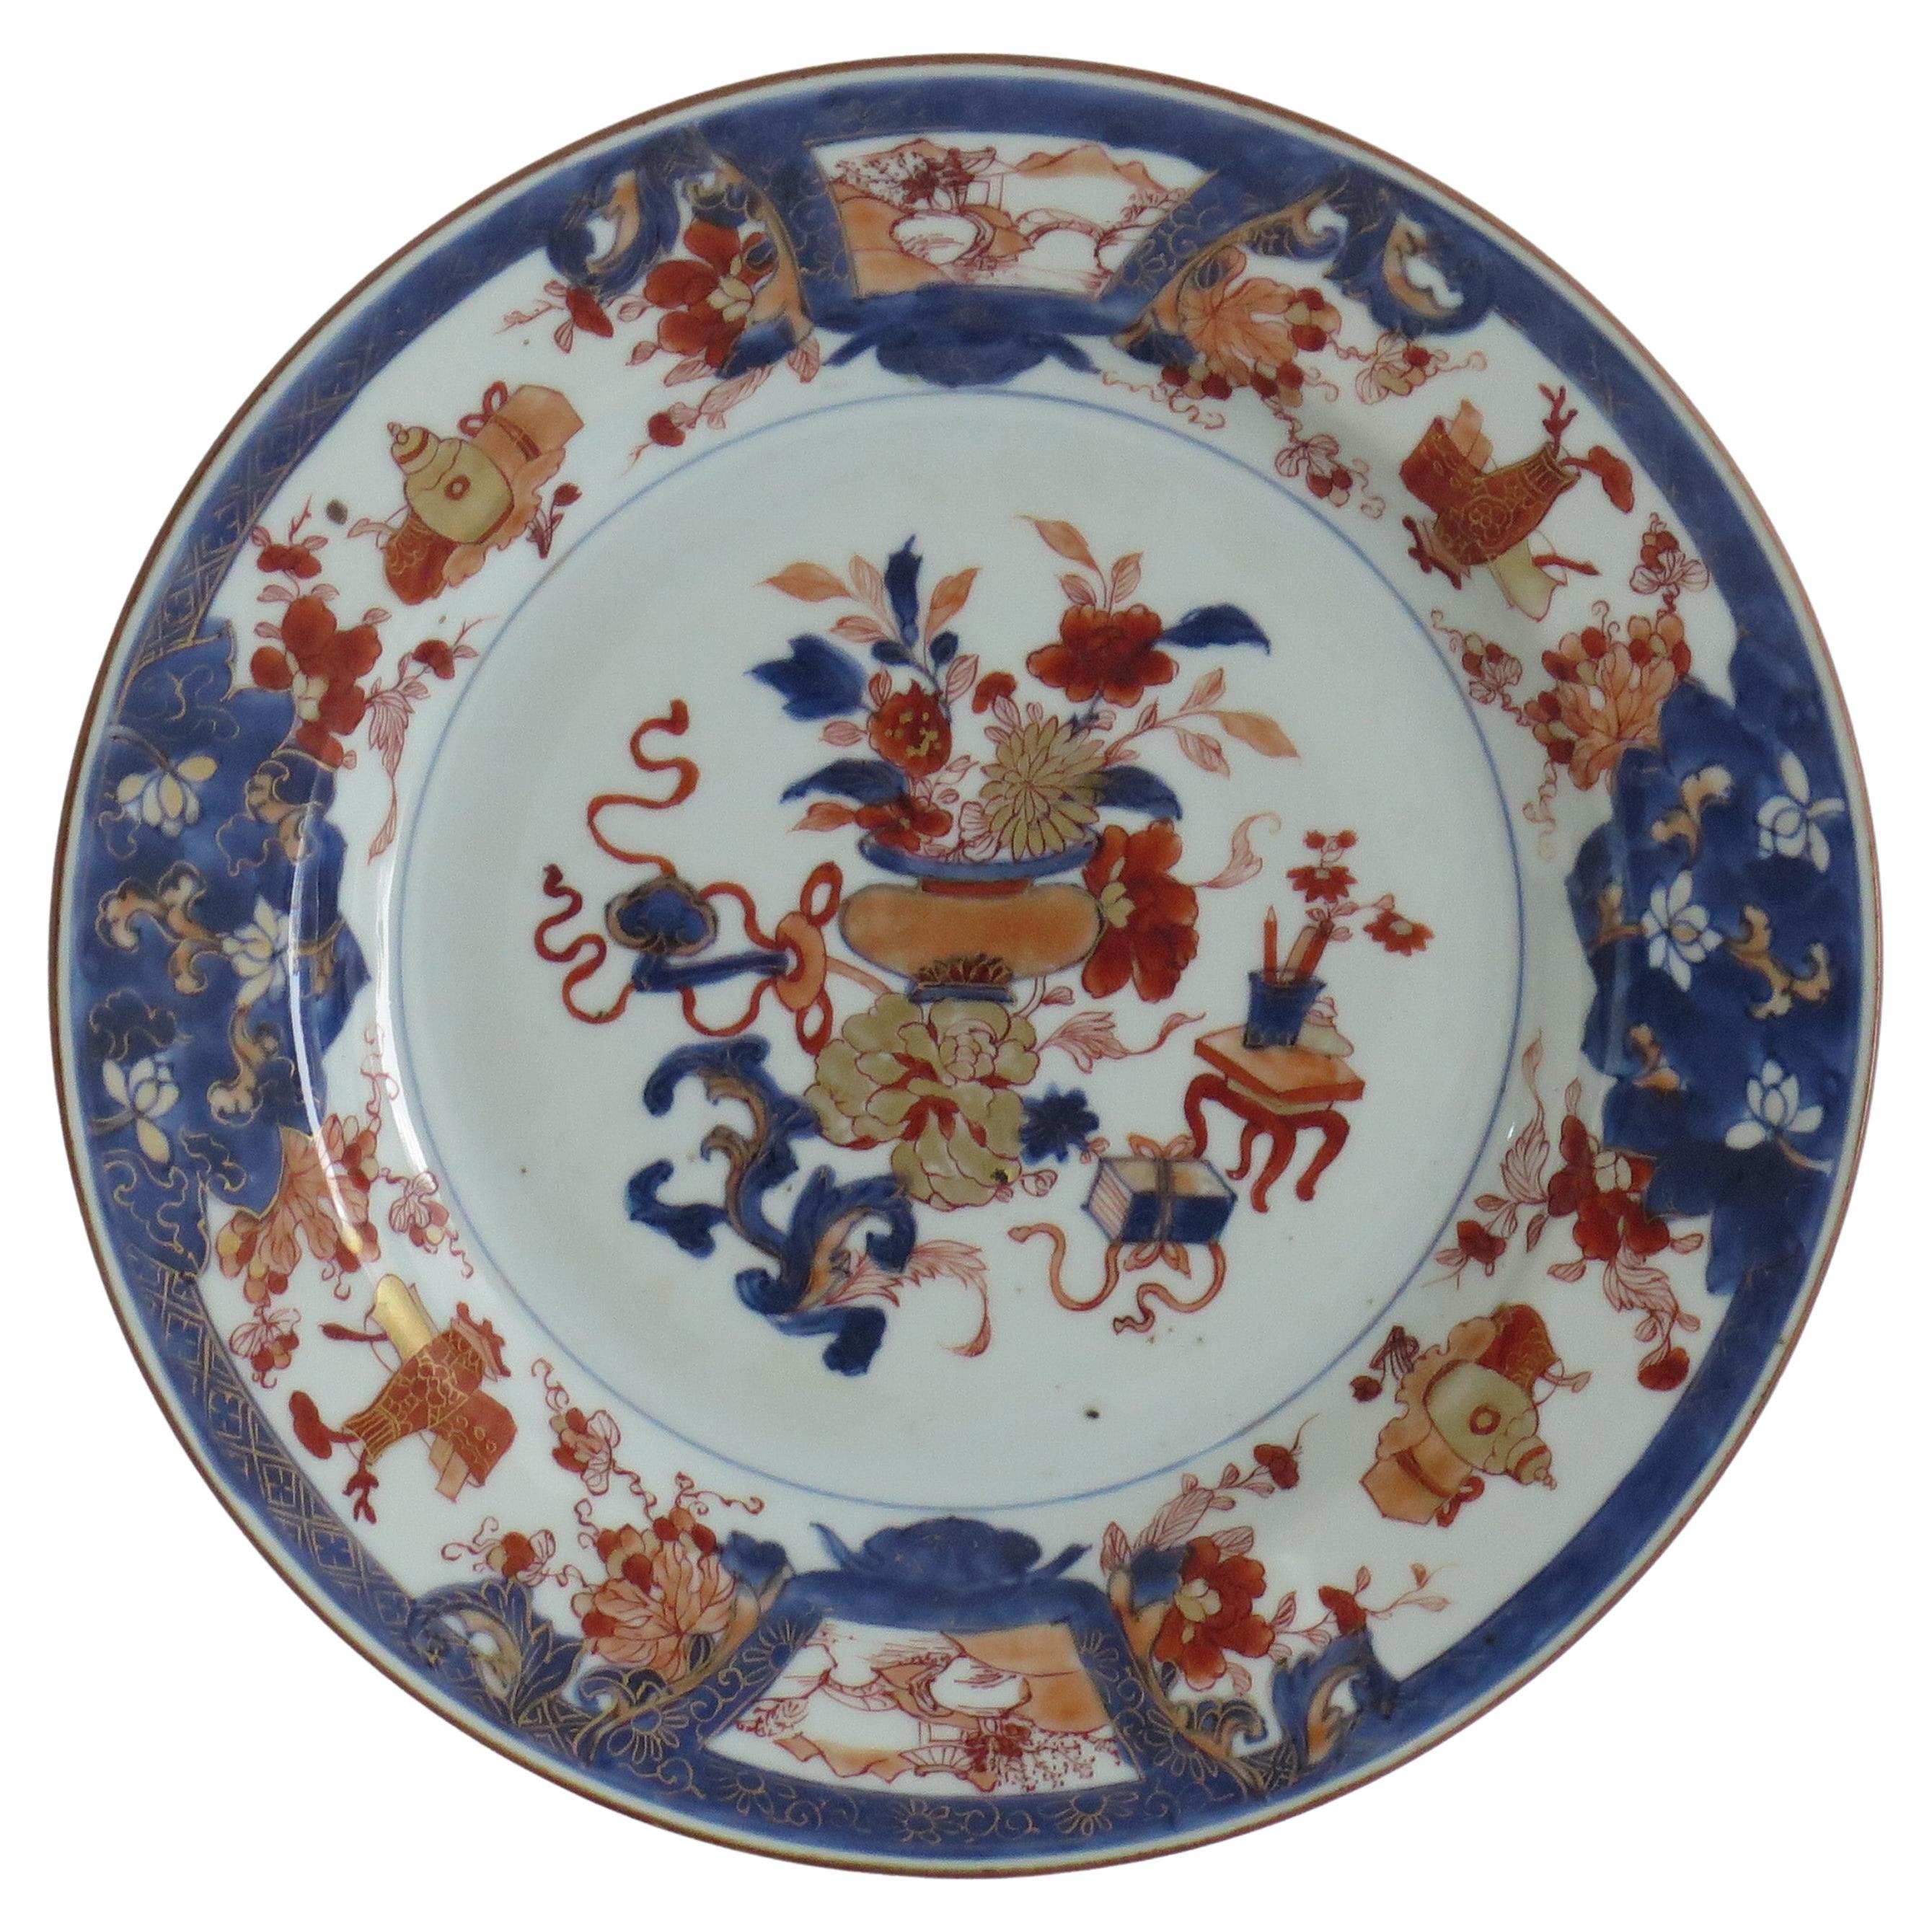 Assiette en porcelaine chinoise (B) finement décorée à la main, Qing Kangxi vers 1700